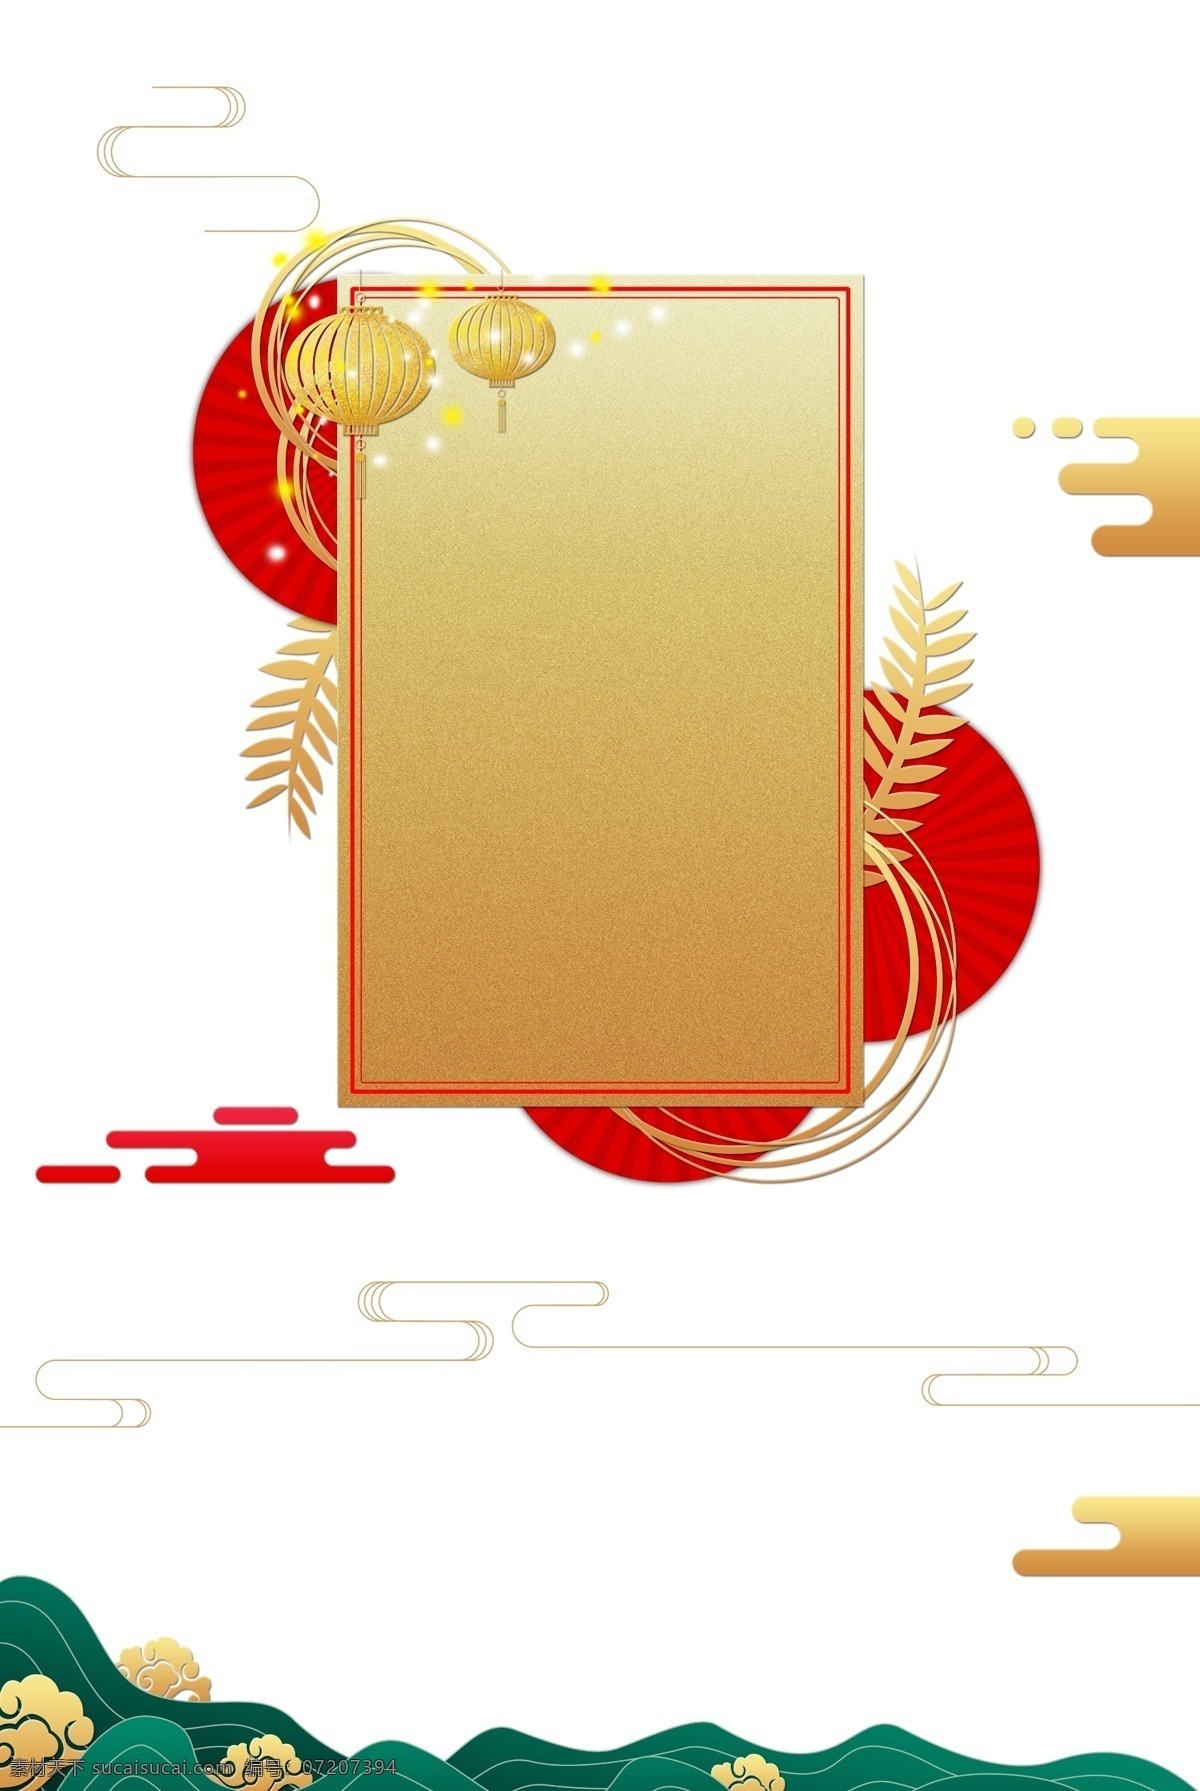 中式 风格 海报 边框 新年 春节 农历新年 2019年 大年夜 传统节日 中国风 海报装饰 海报边框 金色 烫金 祥云 矢量